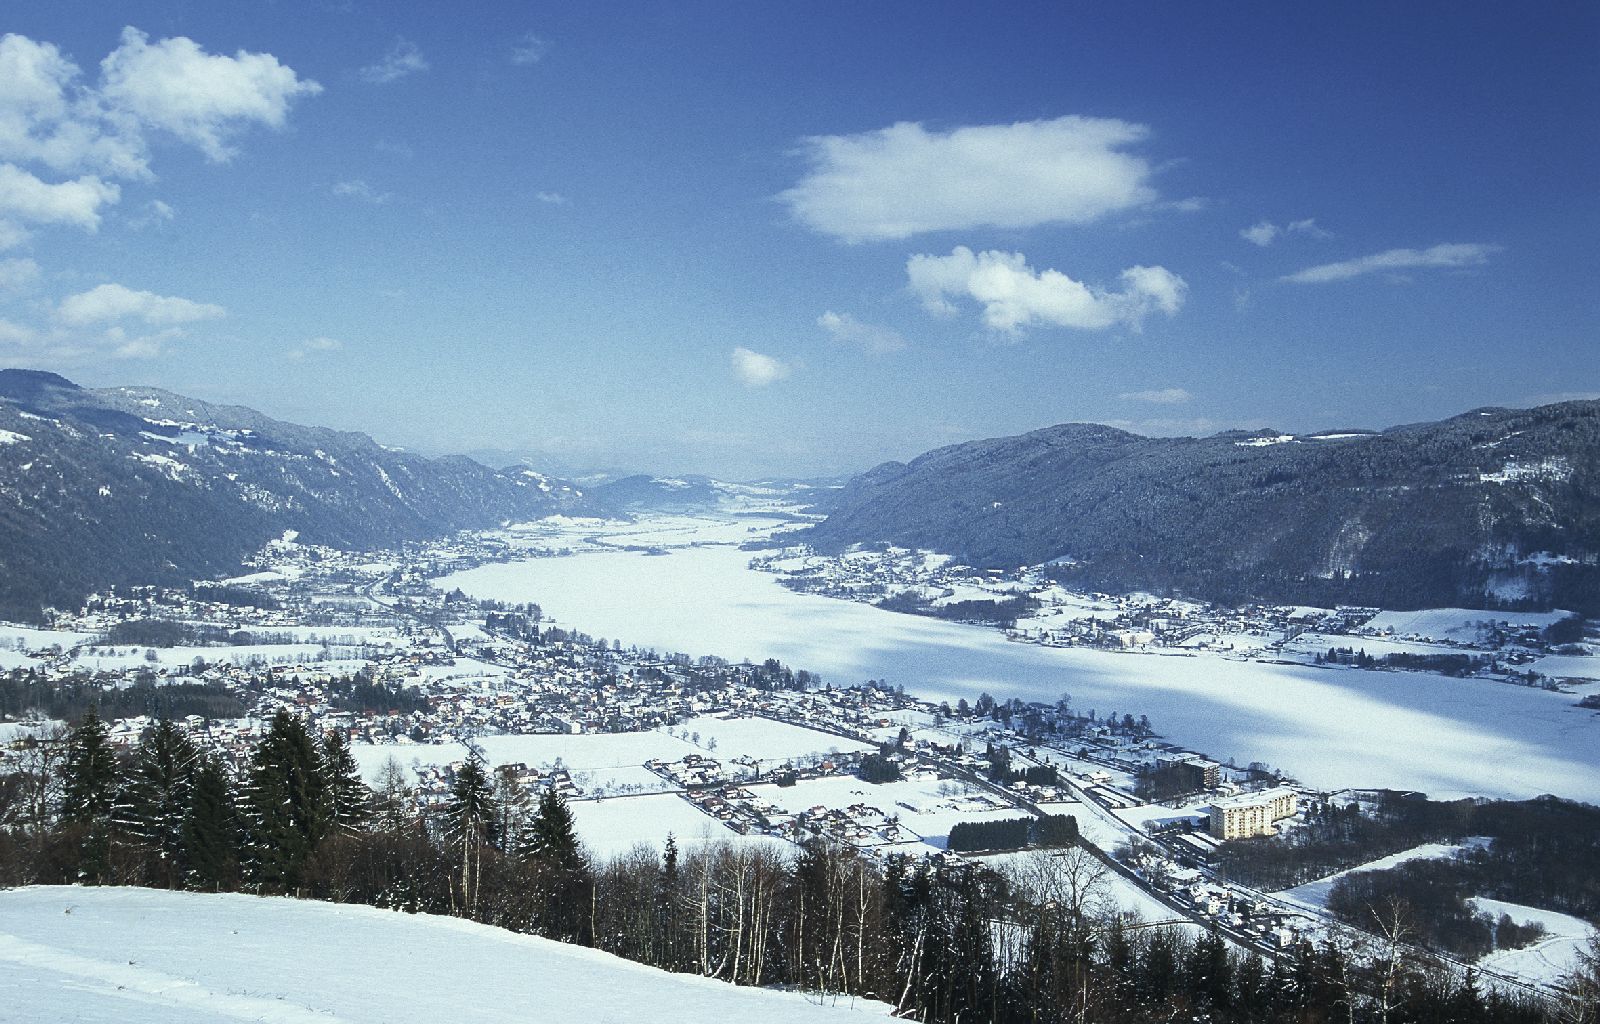 Villach mellett található az Ossiachi-tó, mely télen korcsolyázásra, nyáron pedig vitorlázásra, kajakozásra és akár búvárkodásra is alkalmas.